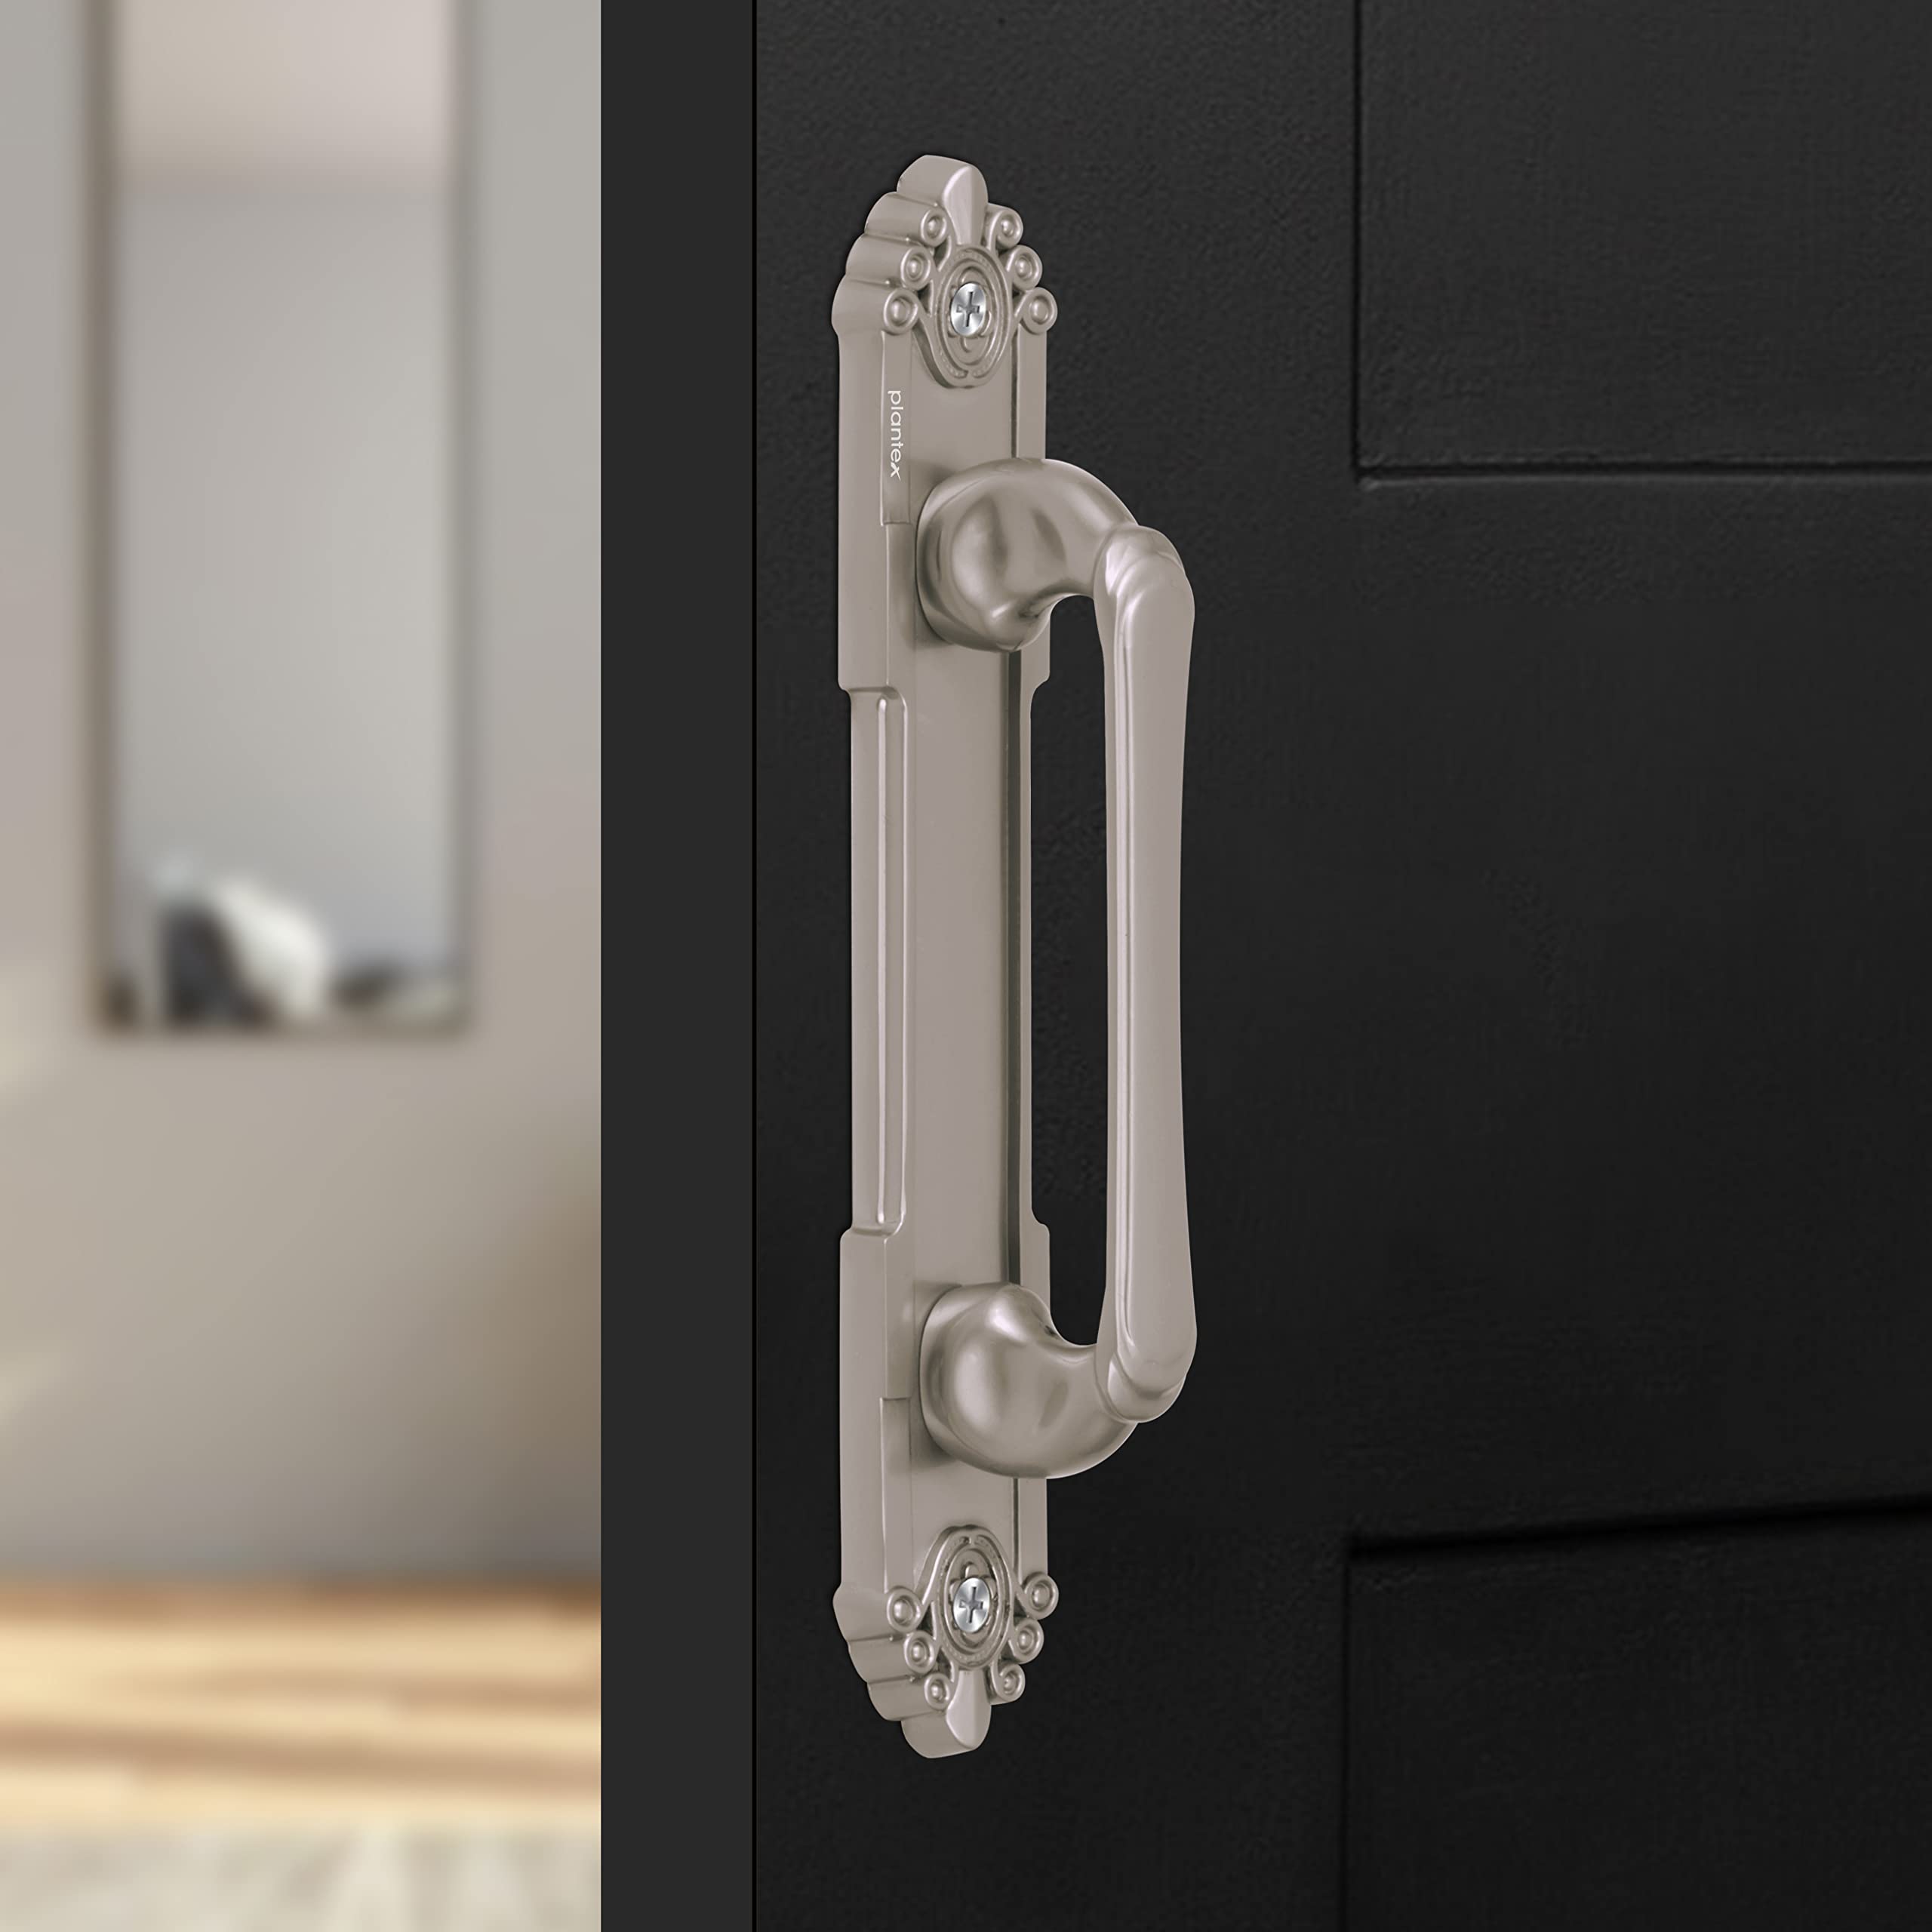 Plantex Cabinet Door Handle/8 Inch Wardrobe Door Handle/Door Pull-Push/Sliding Handle for Cupboard/Drawer – Pack of 1 (294, Satin Finish)